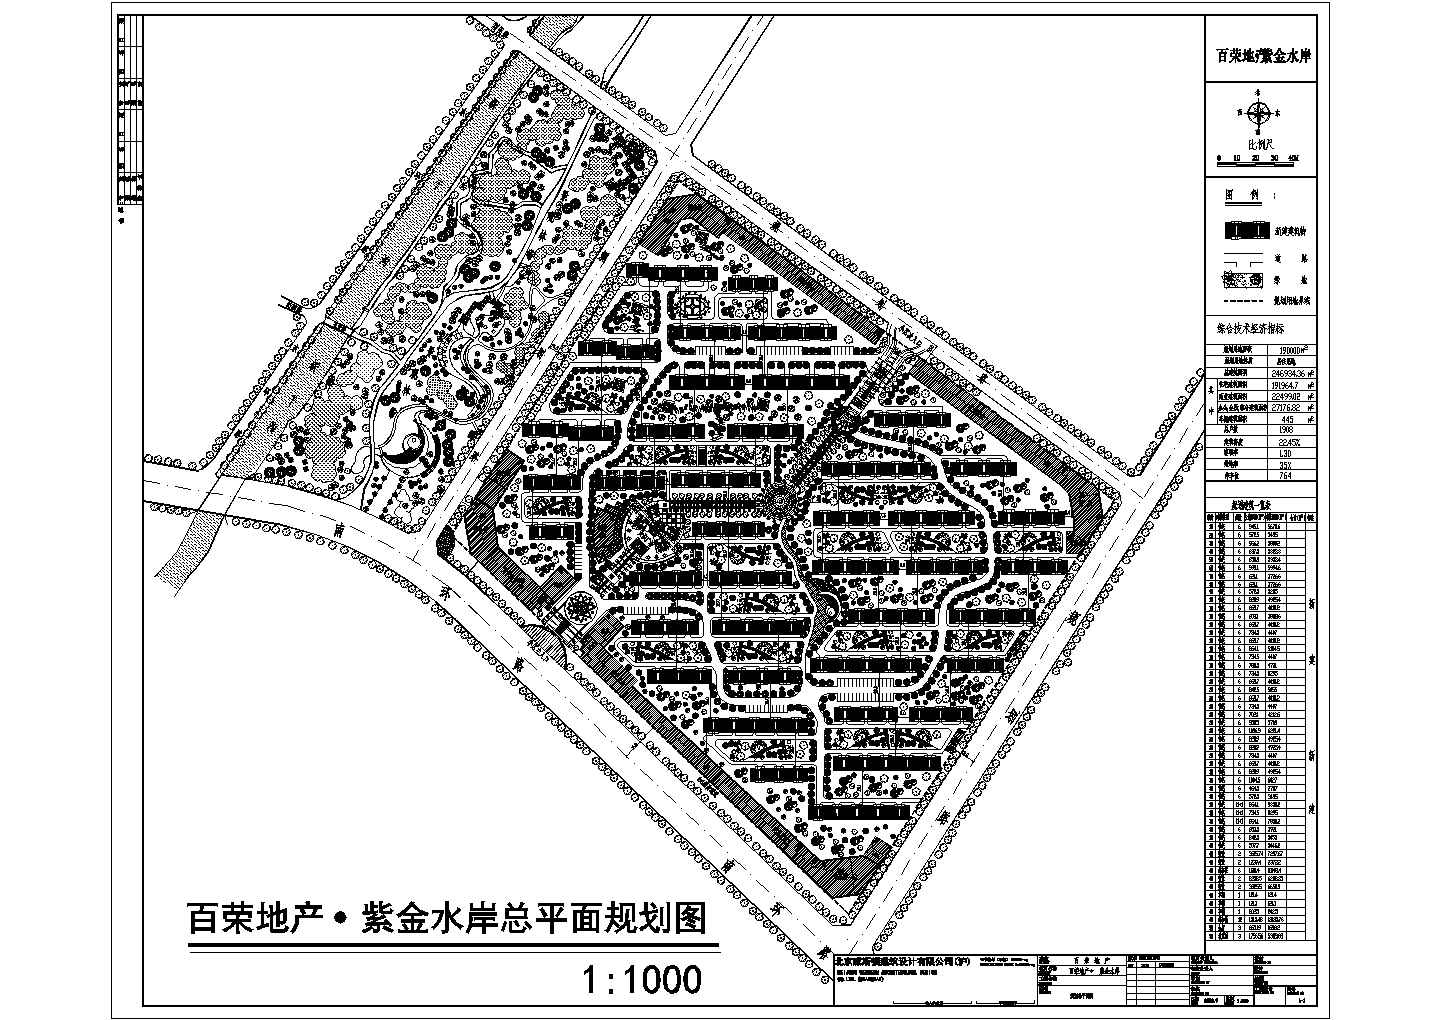 紫金水岸居住小区总平面规划设计方案图